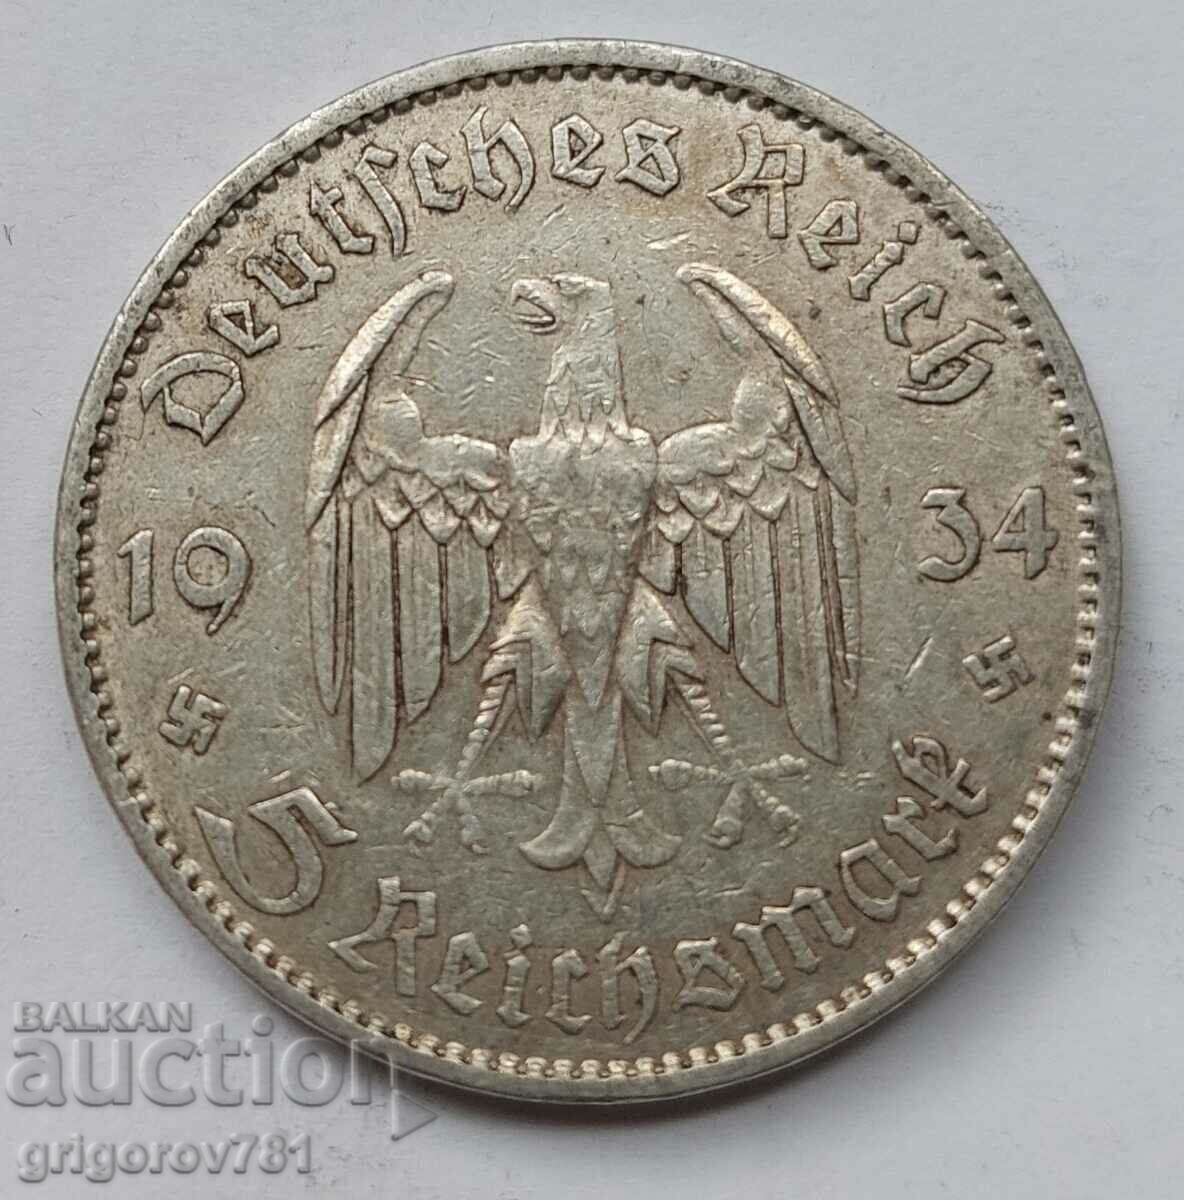 5 mărci de argint Germania 1934 A III Reich Moneda de argint #5